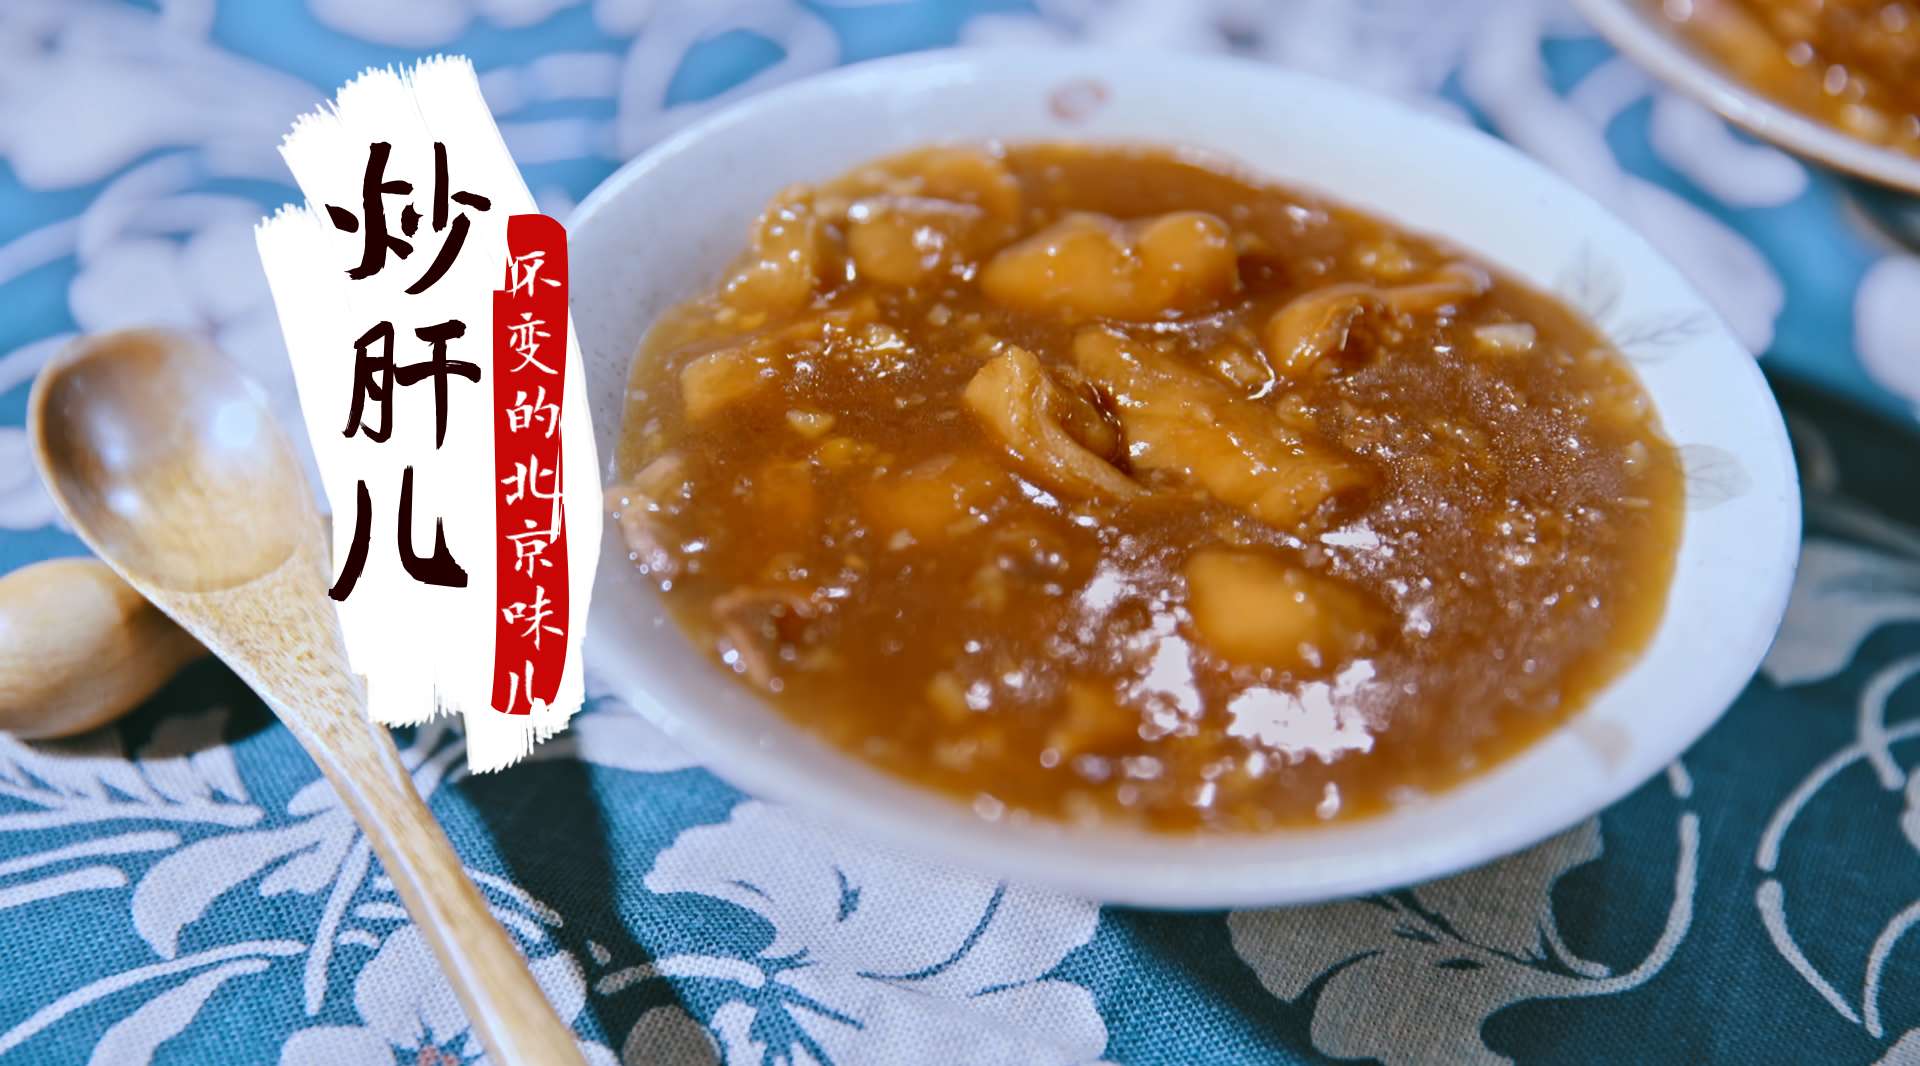 贪云美食—传承三代的京城小吃, 只为留住北京人最初的念想